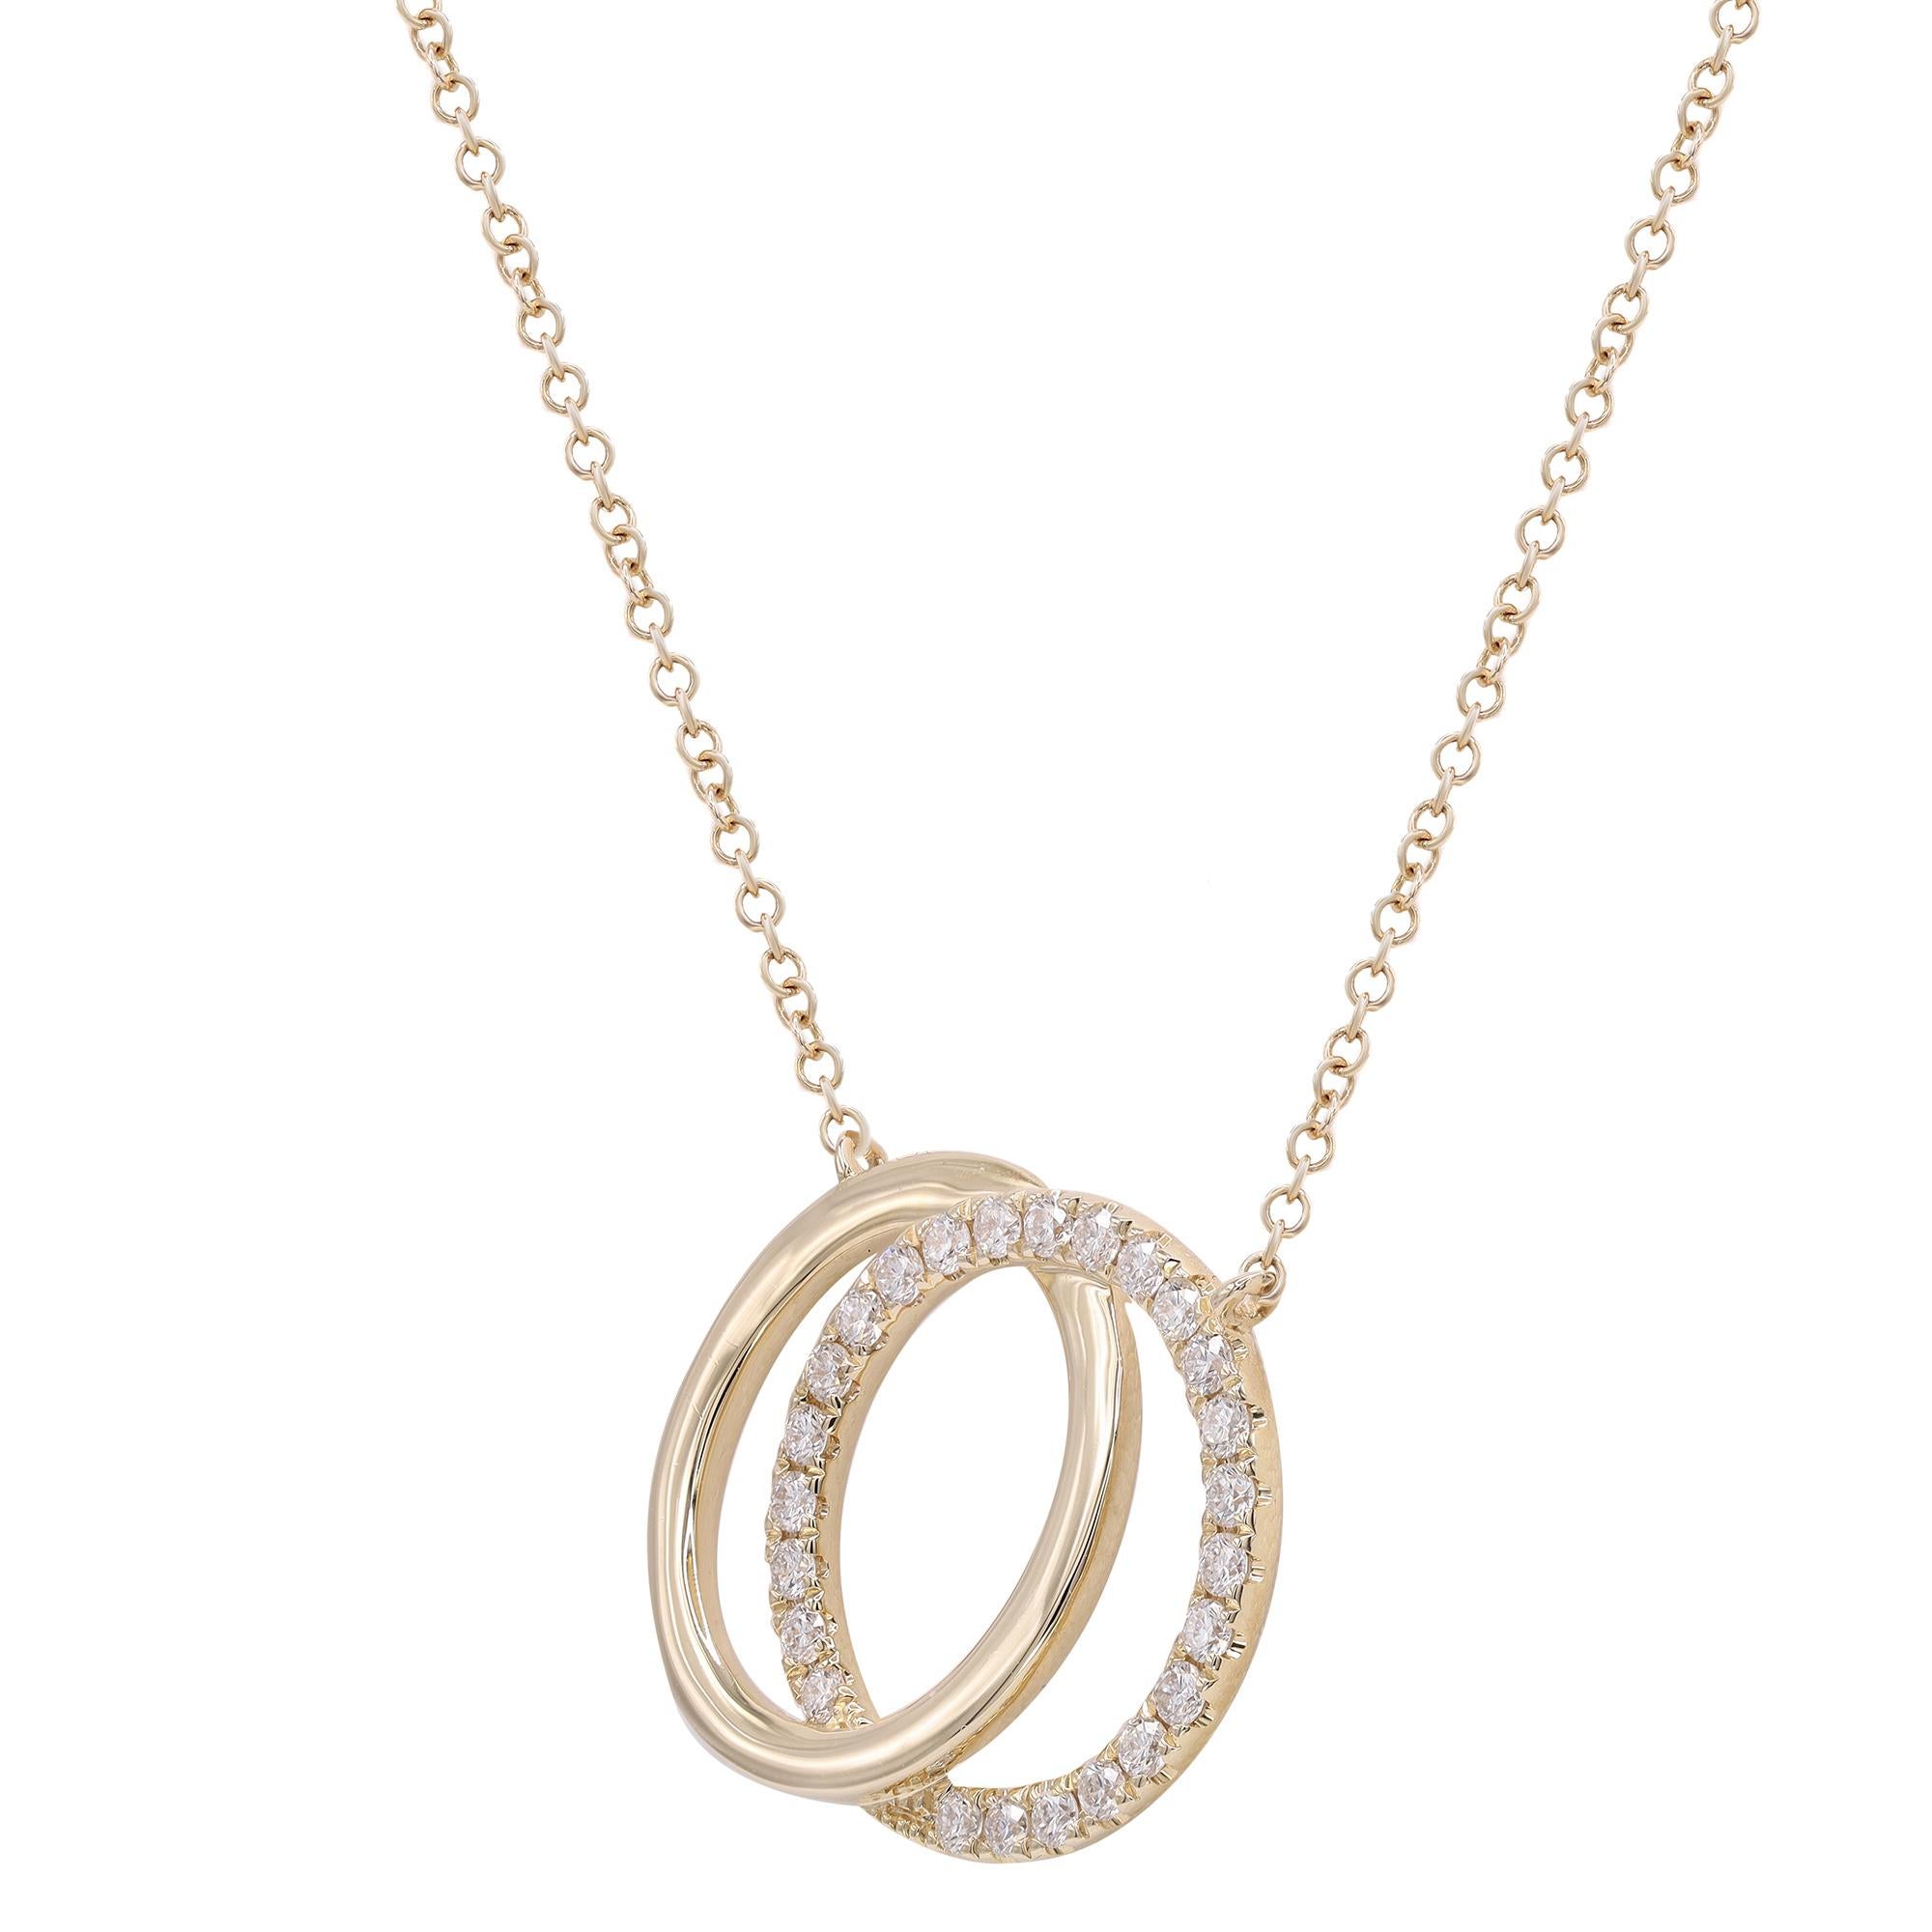 Ce magnifique collier pendentif en diamants à anneaux imbriqués en or jaune 14k représente magnifiquement le lien inséparable entre deux âmes. Une bague cloutée en diamants ronds est imbriquée dans une bague en or jaune poli dans une étreinte